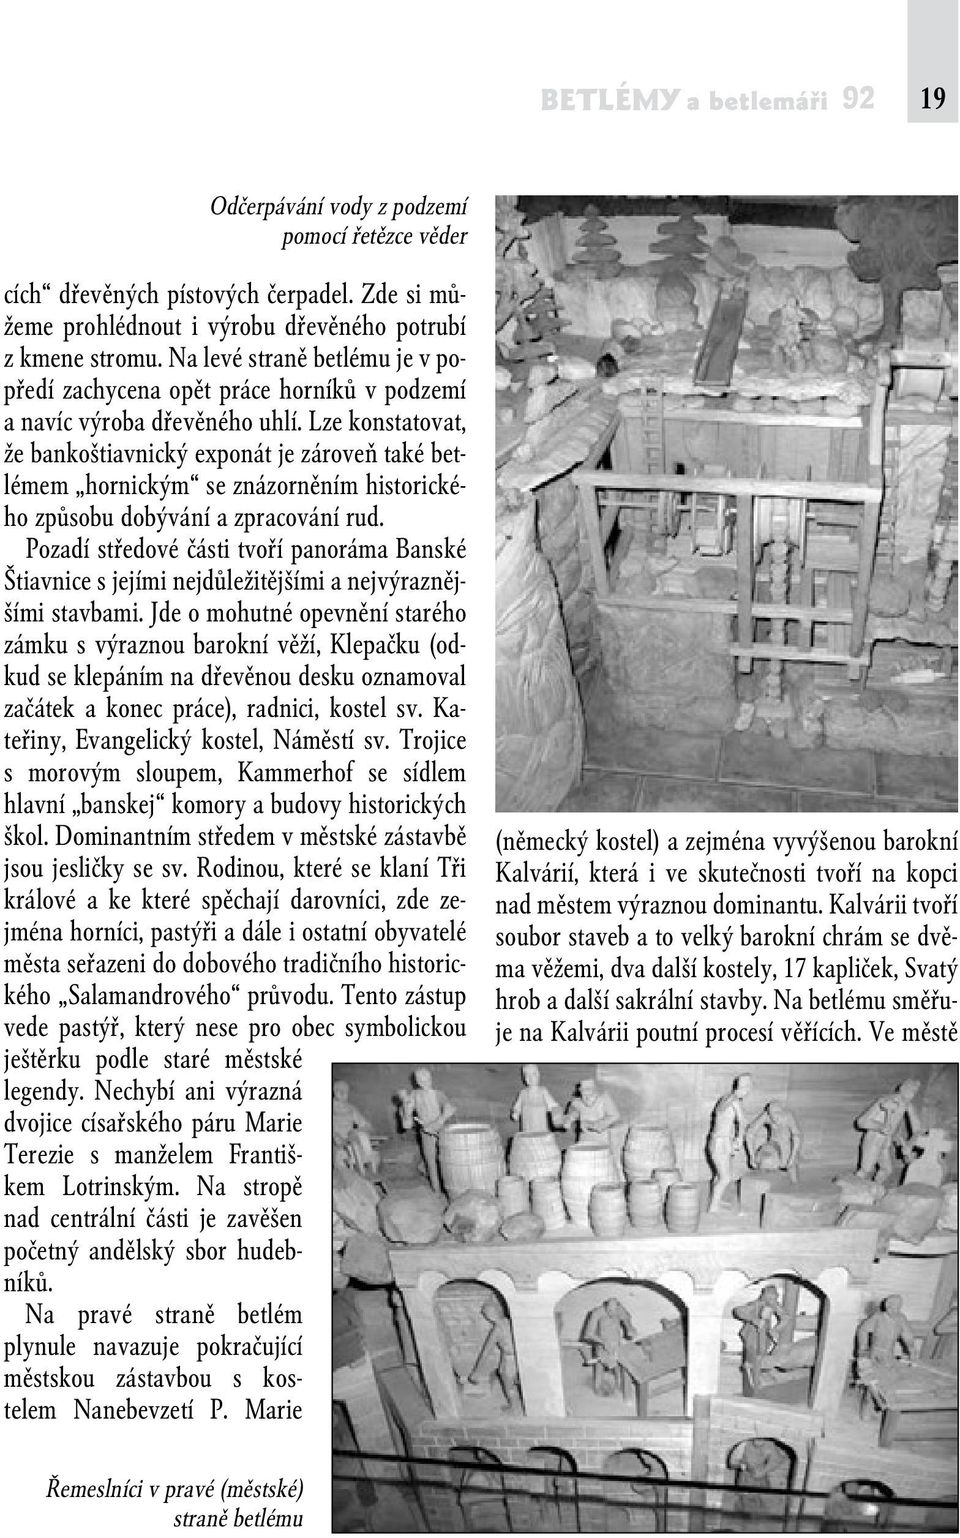 Lze konstatovat, že bankoštiavnický exponát je zároveň také betlémem hornickým se znázorněním historického způsobu dobývání a zpracování rud.